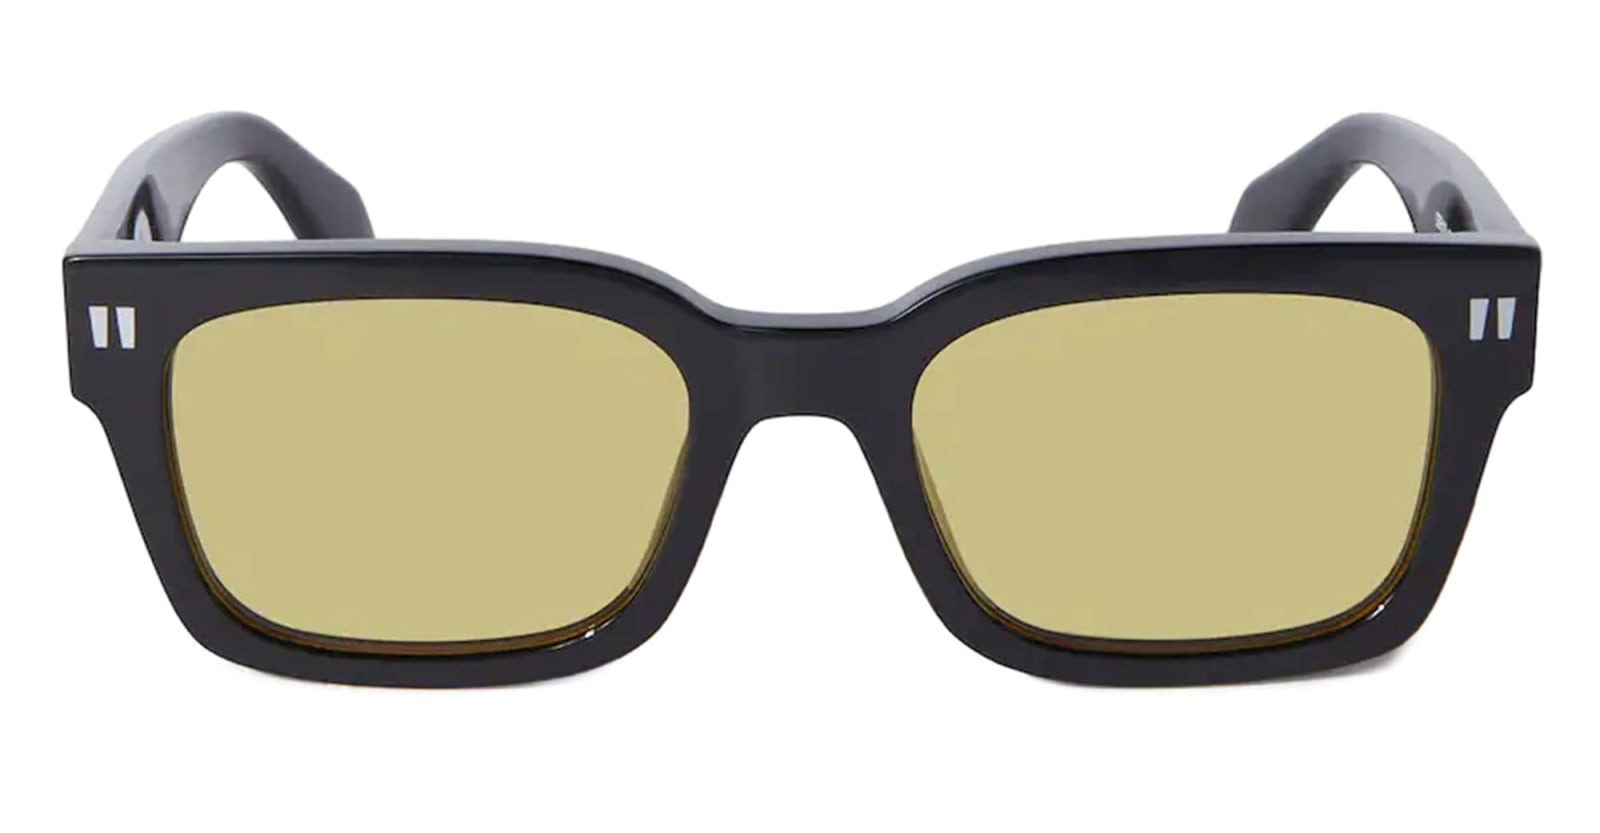 Off-White Midland Sunglasses